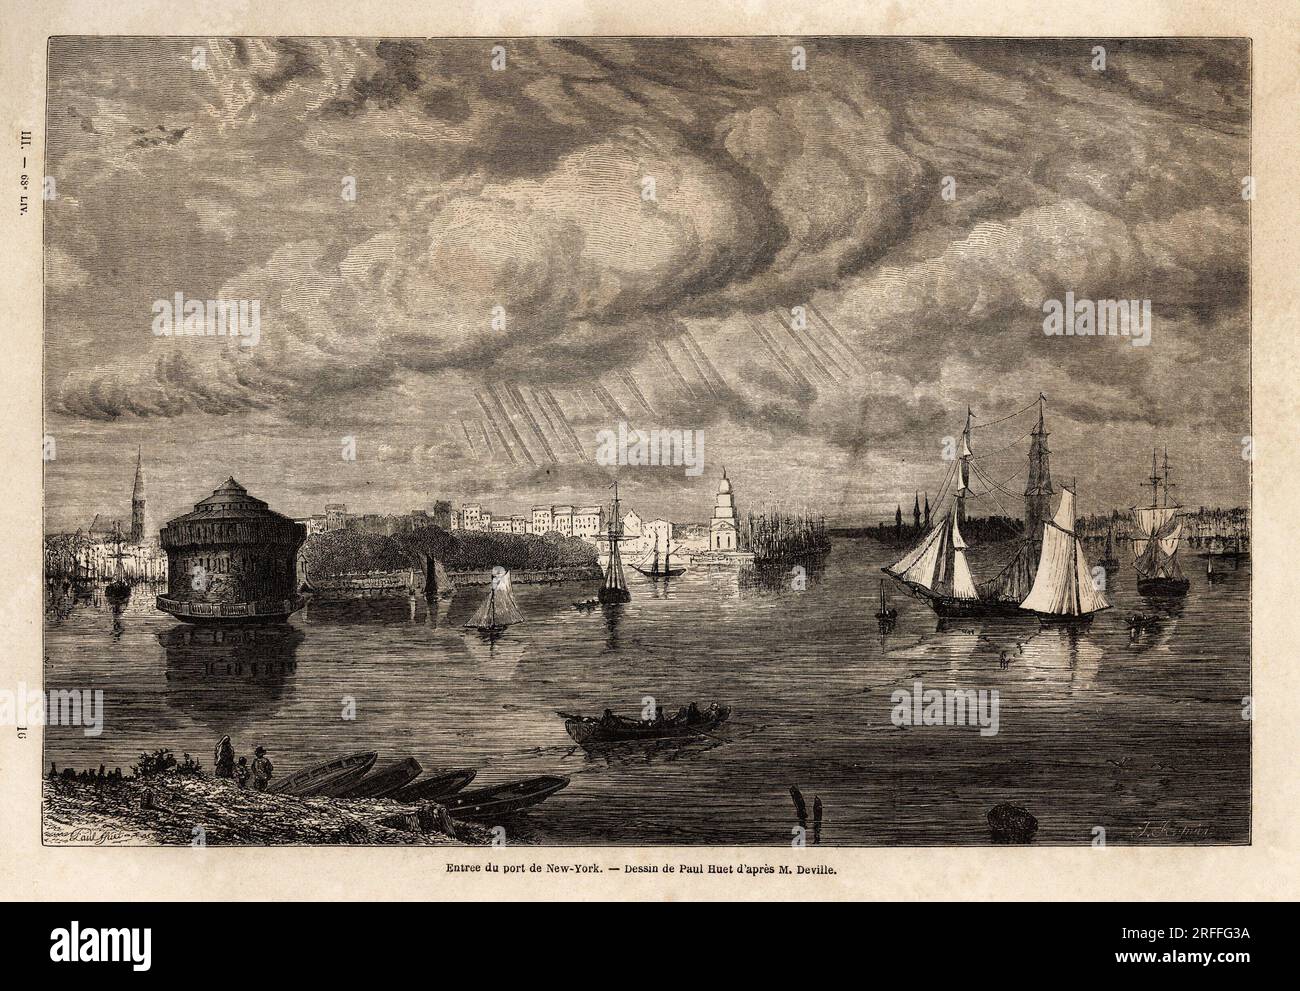 L'entree du Port de New York, dessin de Paul Huet (1803-1869), pour Illustrator les voyages dans l'Amerique septentrionale en 1854-1855, de L. Deville. Gravure in „Le Tour du Monde“ 1861. Stockfoto